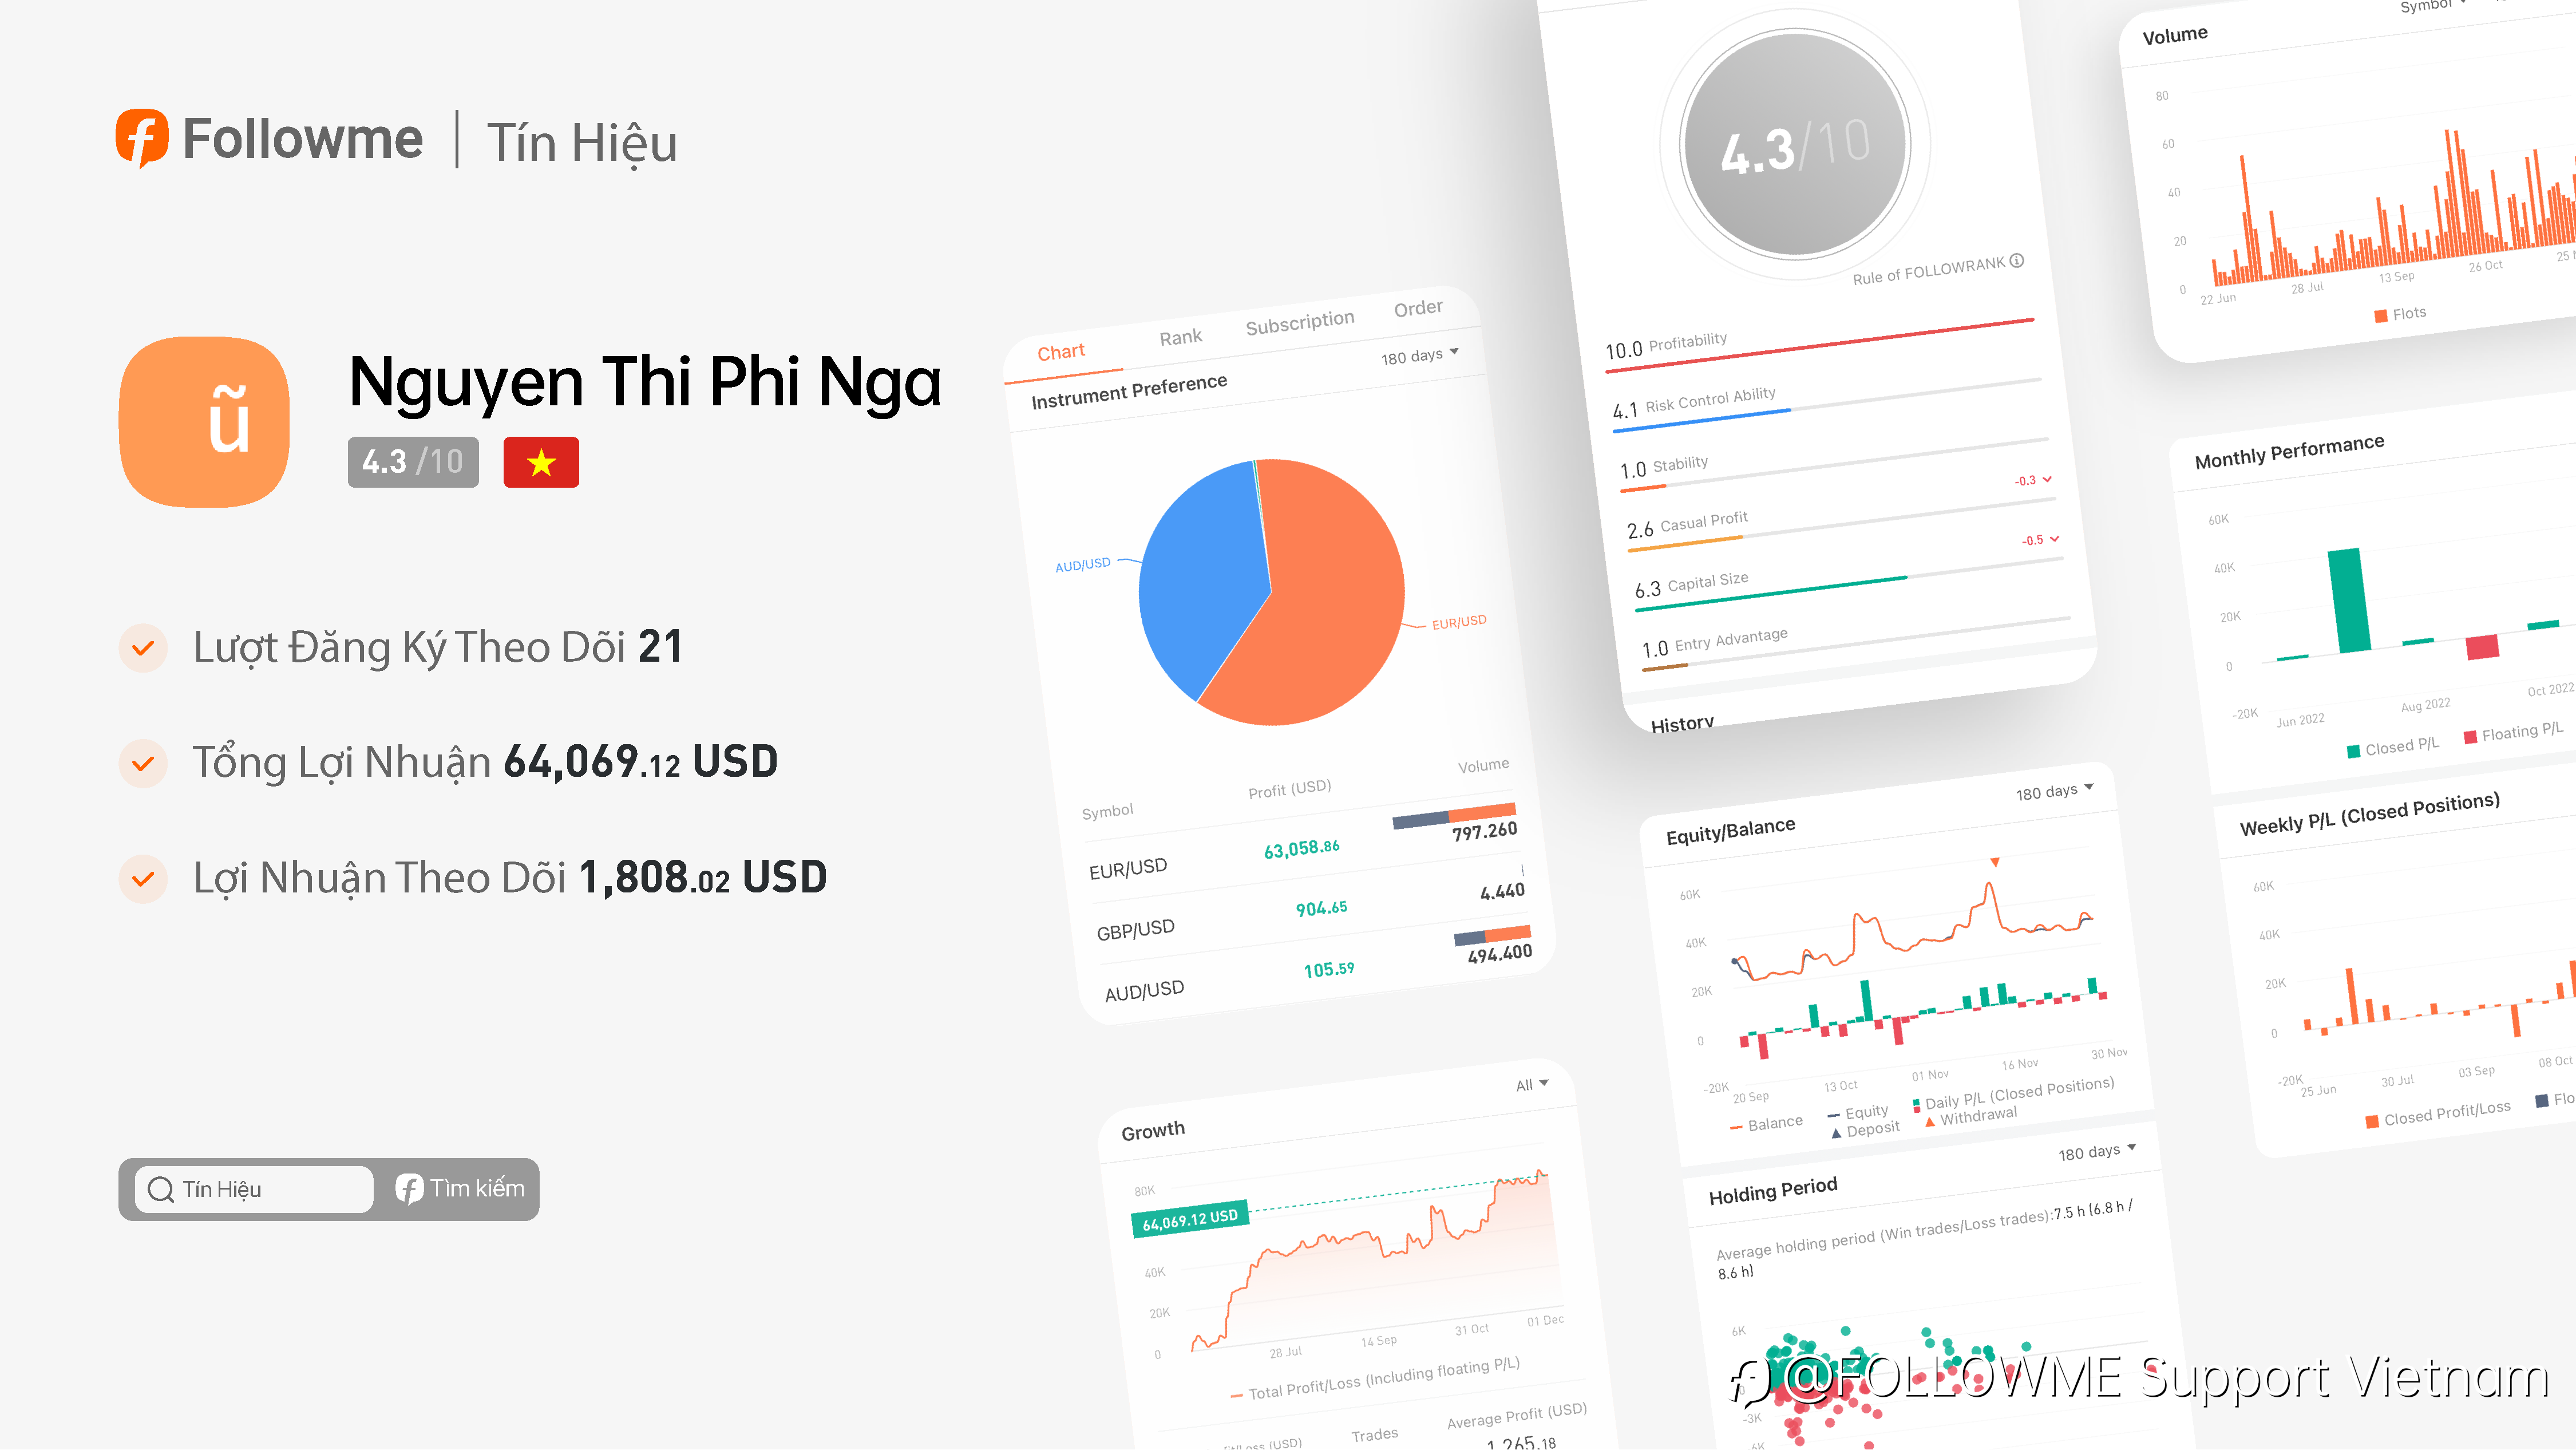 Tín Hiệu | @Nguyen Thi Phi Nga đã kiếm được 66,955 đô-la trong 4 tháng qua